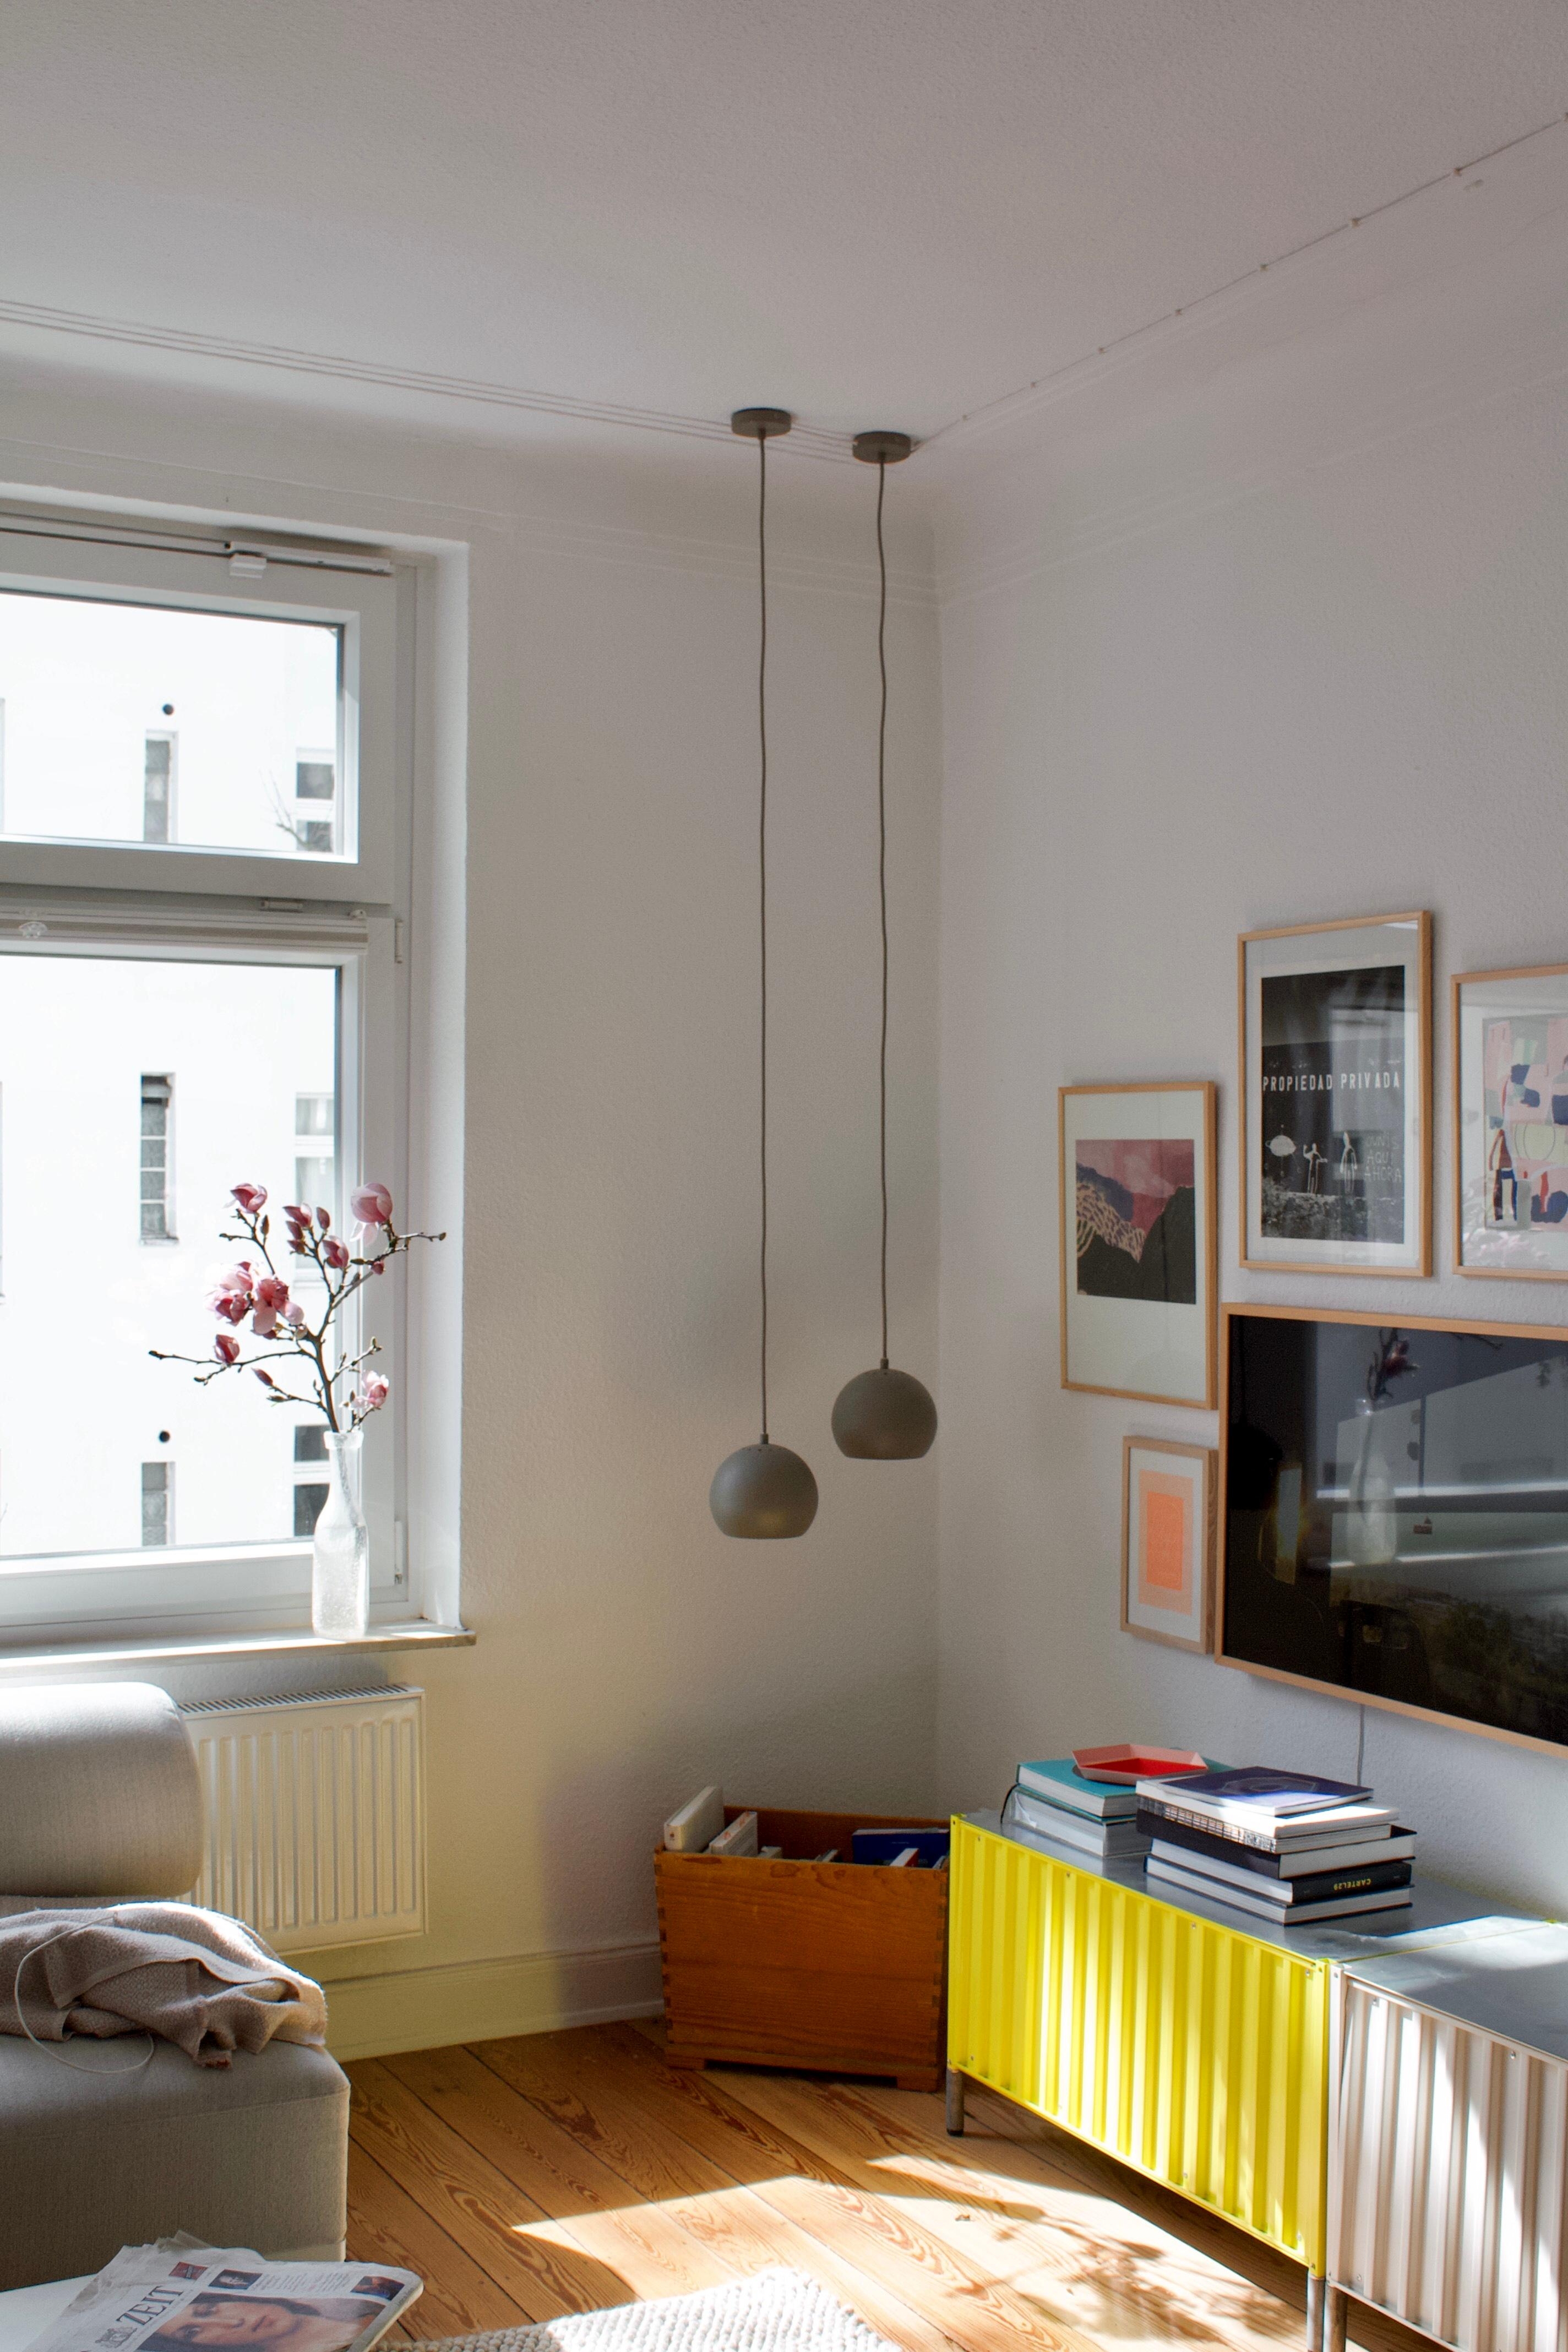 #wohnzimmer #lights #magnolia #farbtupfer #sunshine #altbau 